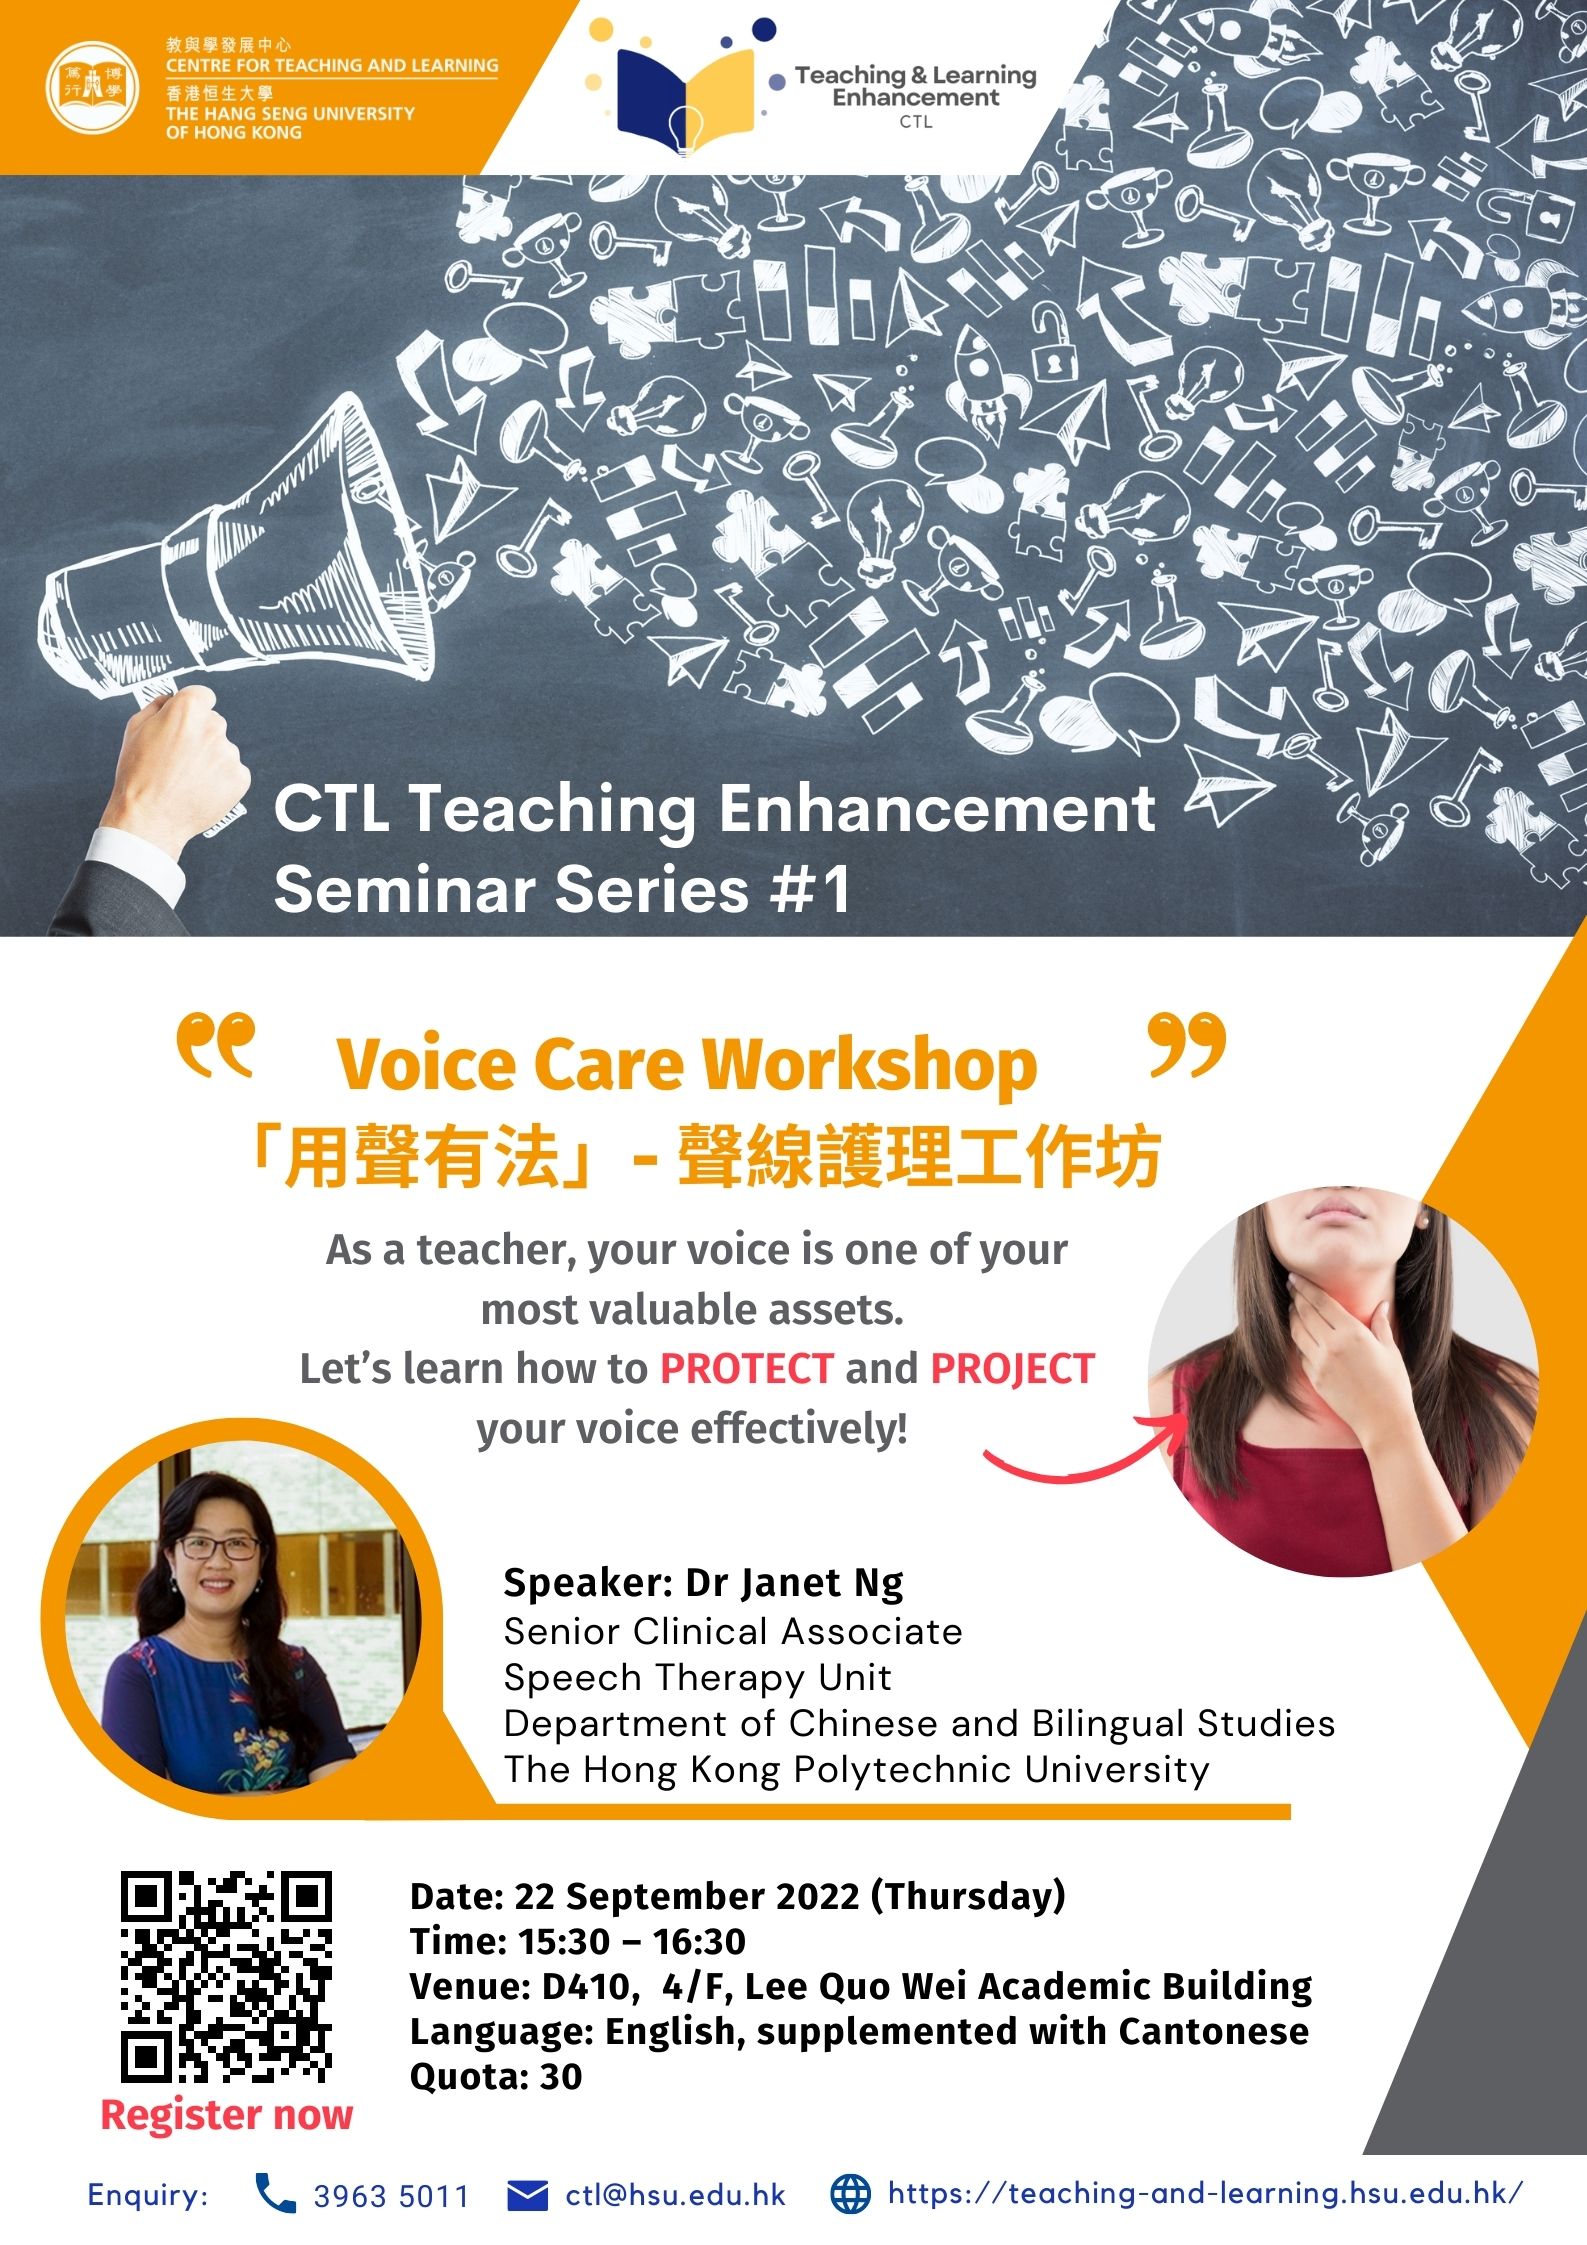 Voice Care Workshop